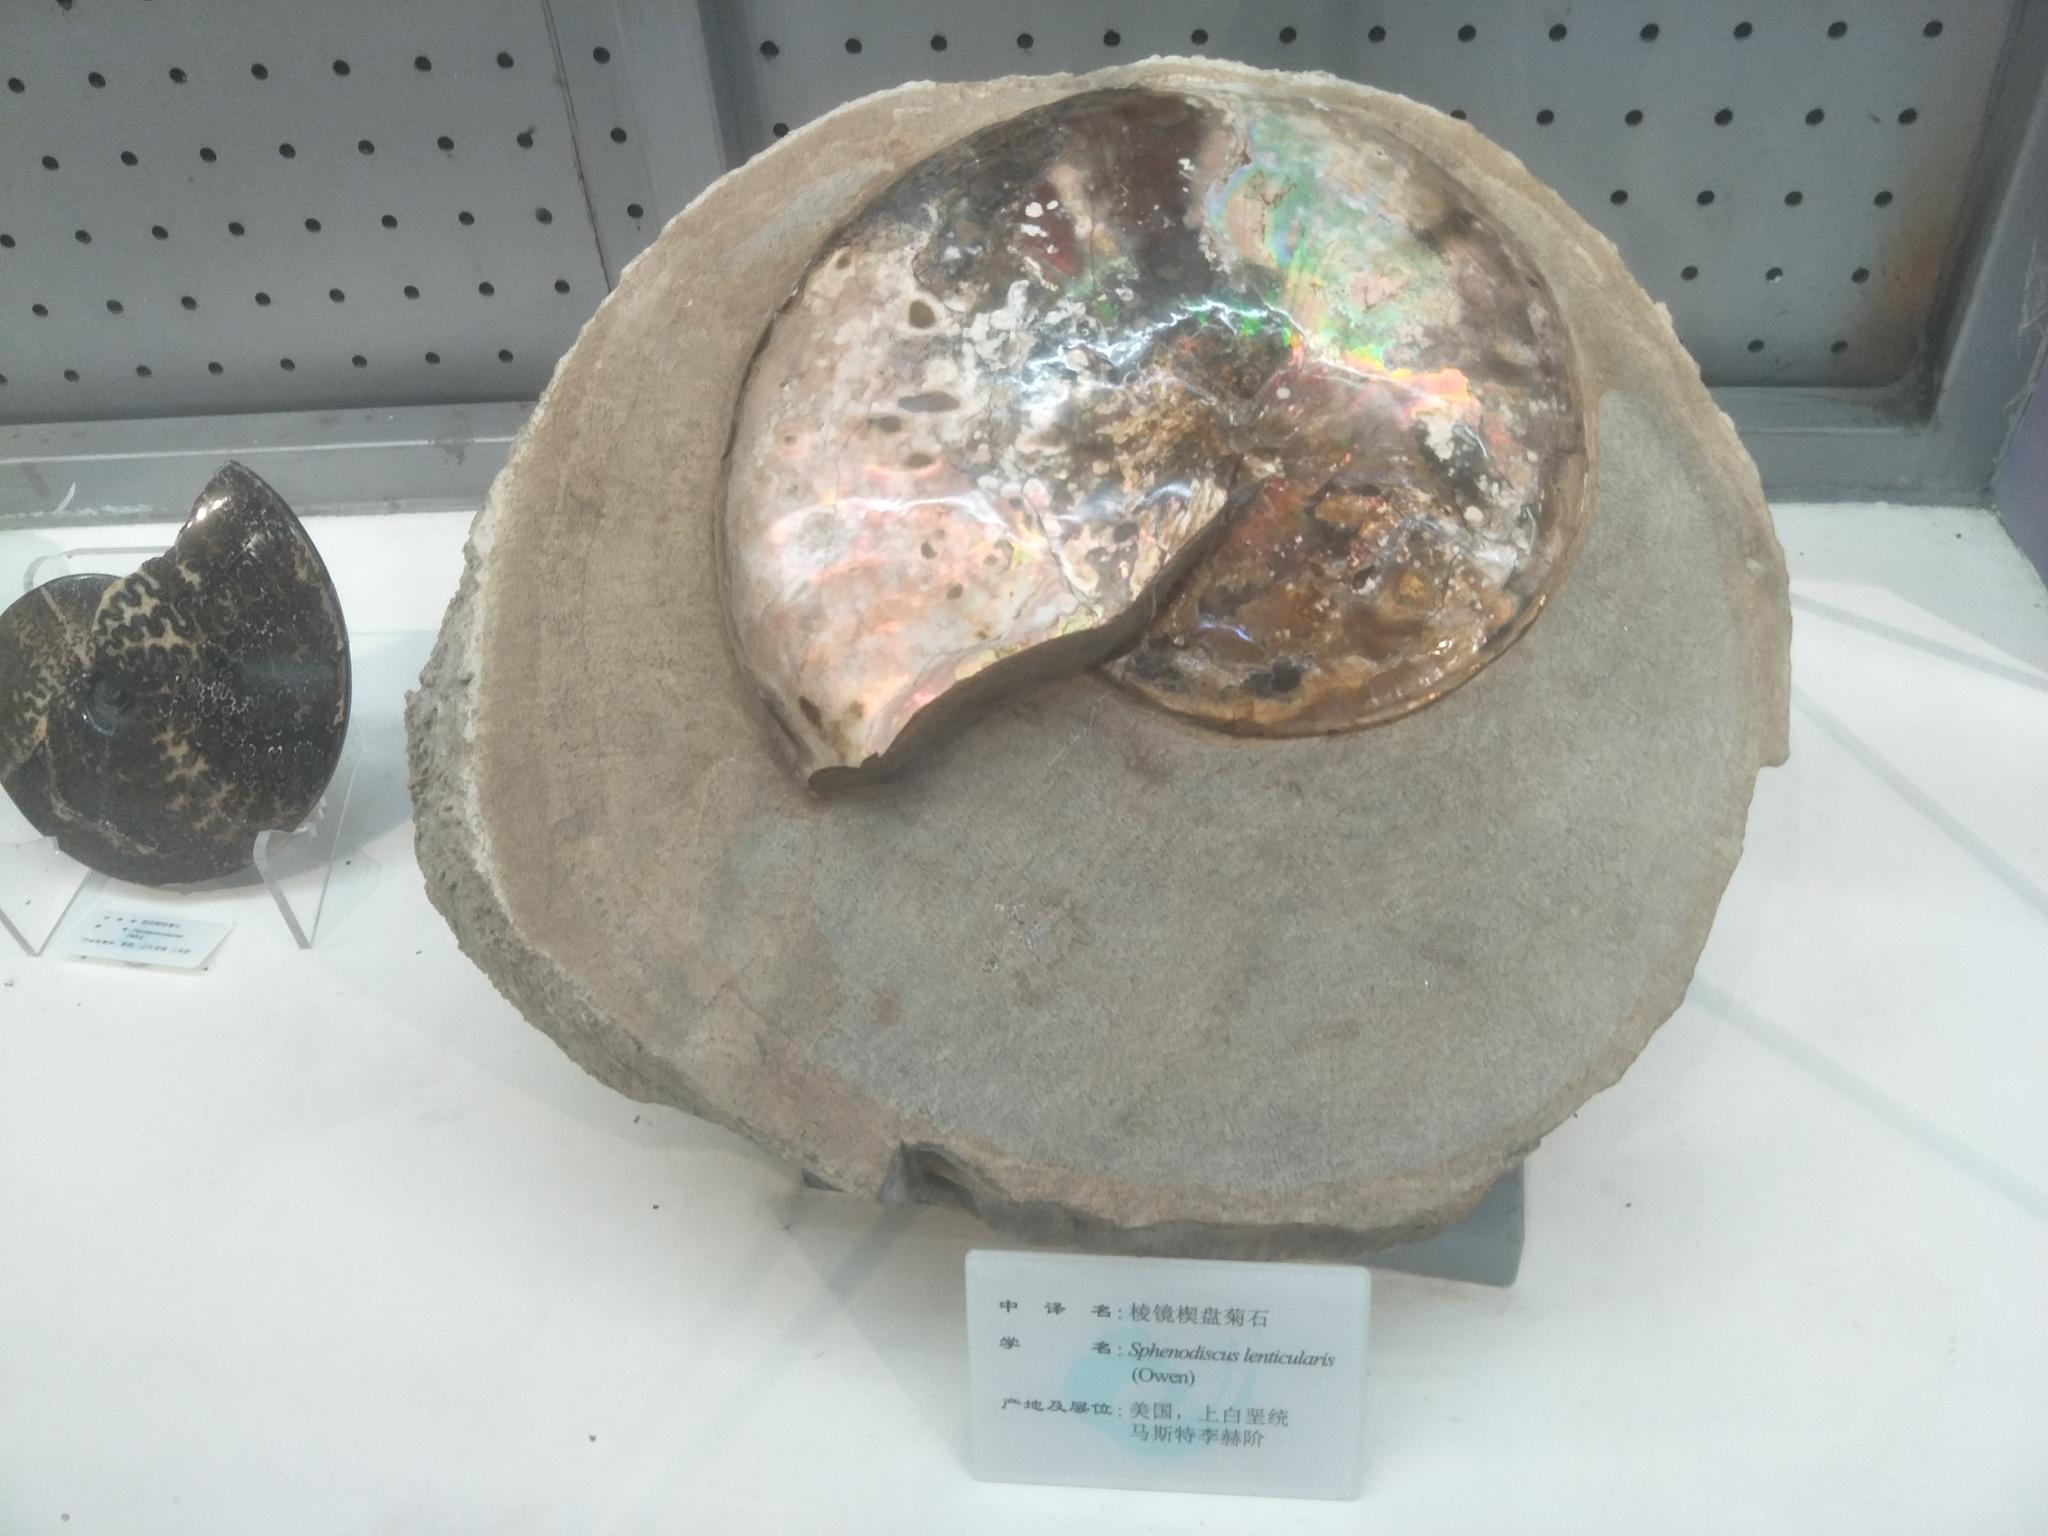 大连贝壳博物馆珍贵的贝壳化石原创摄影